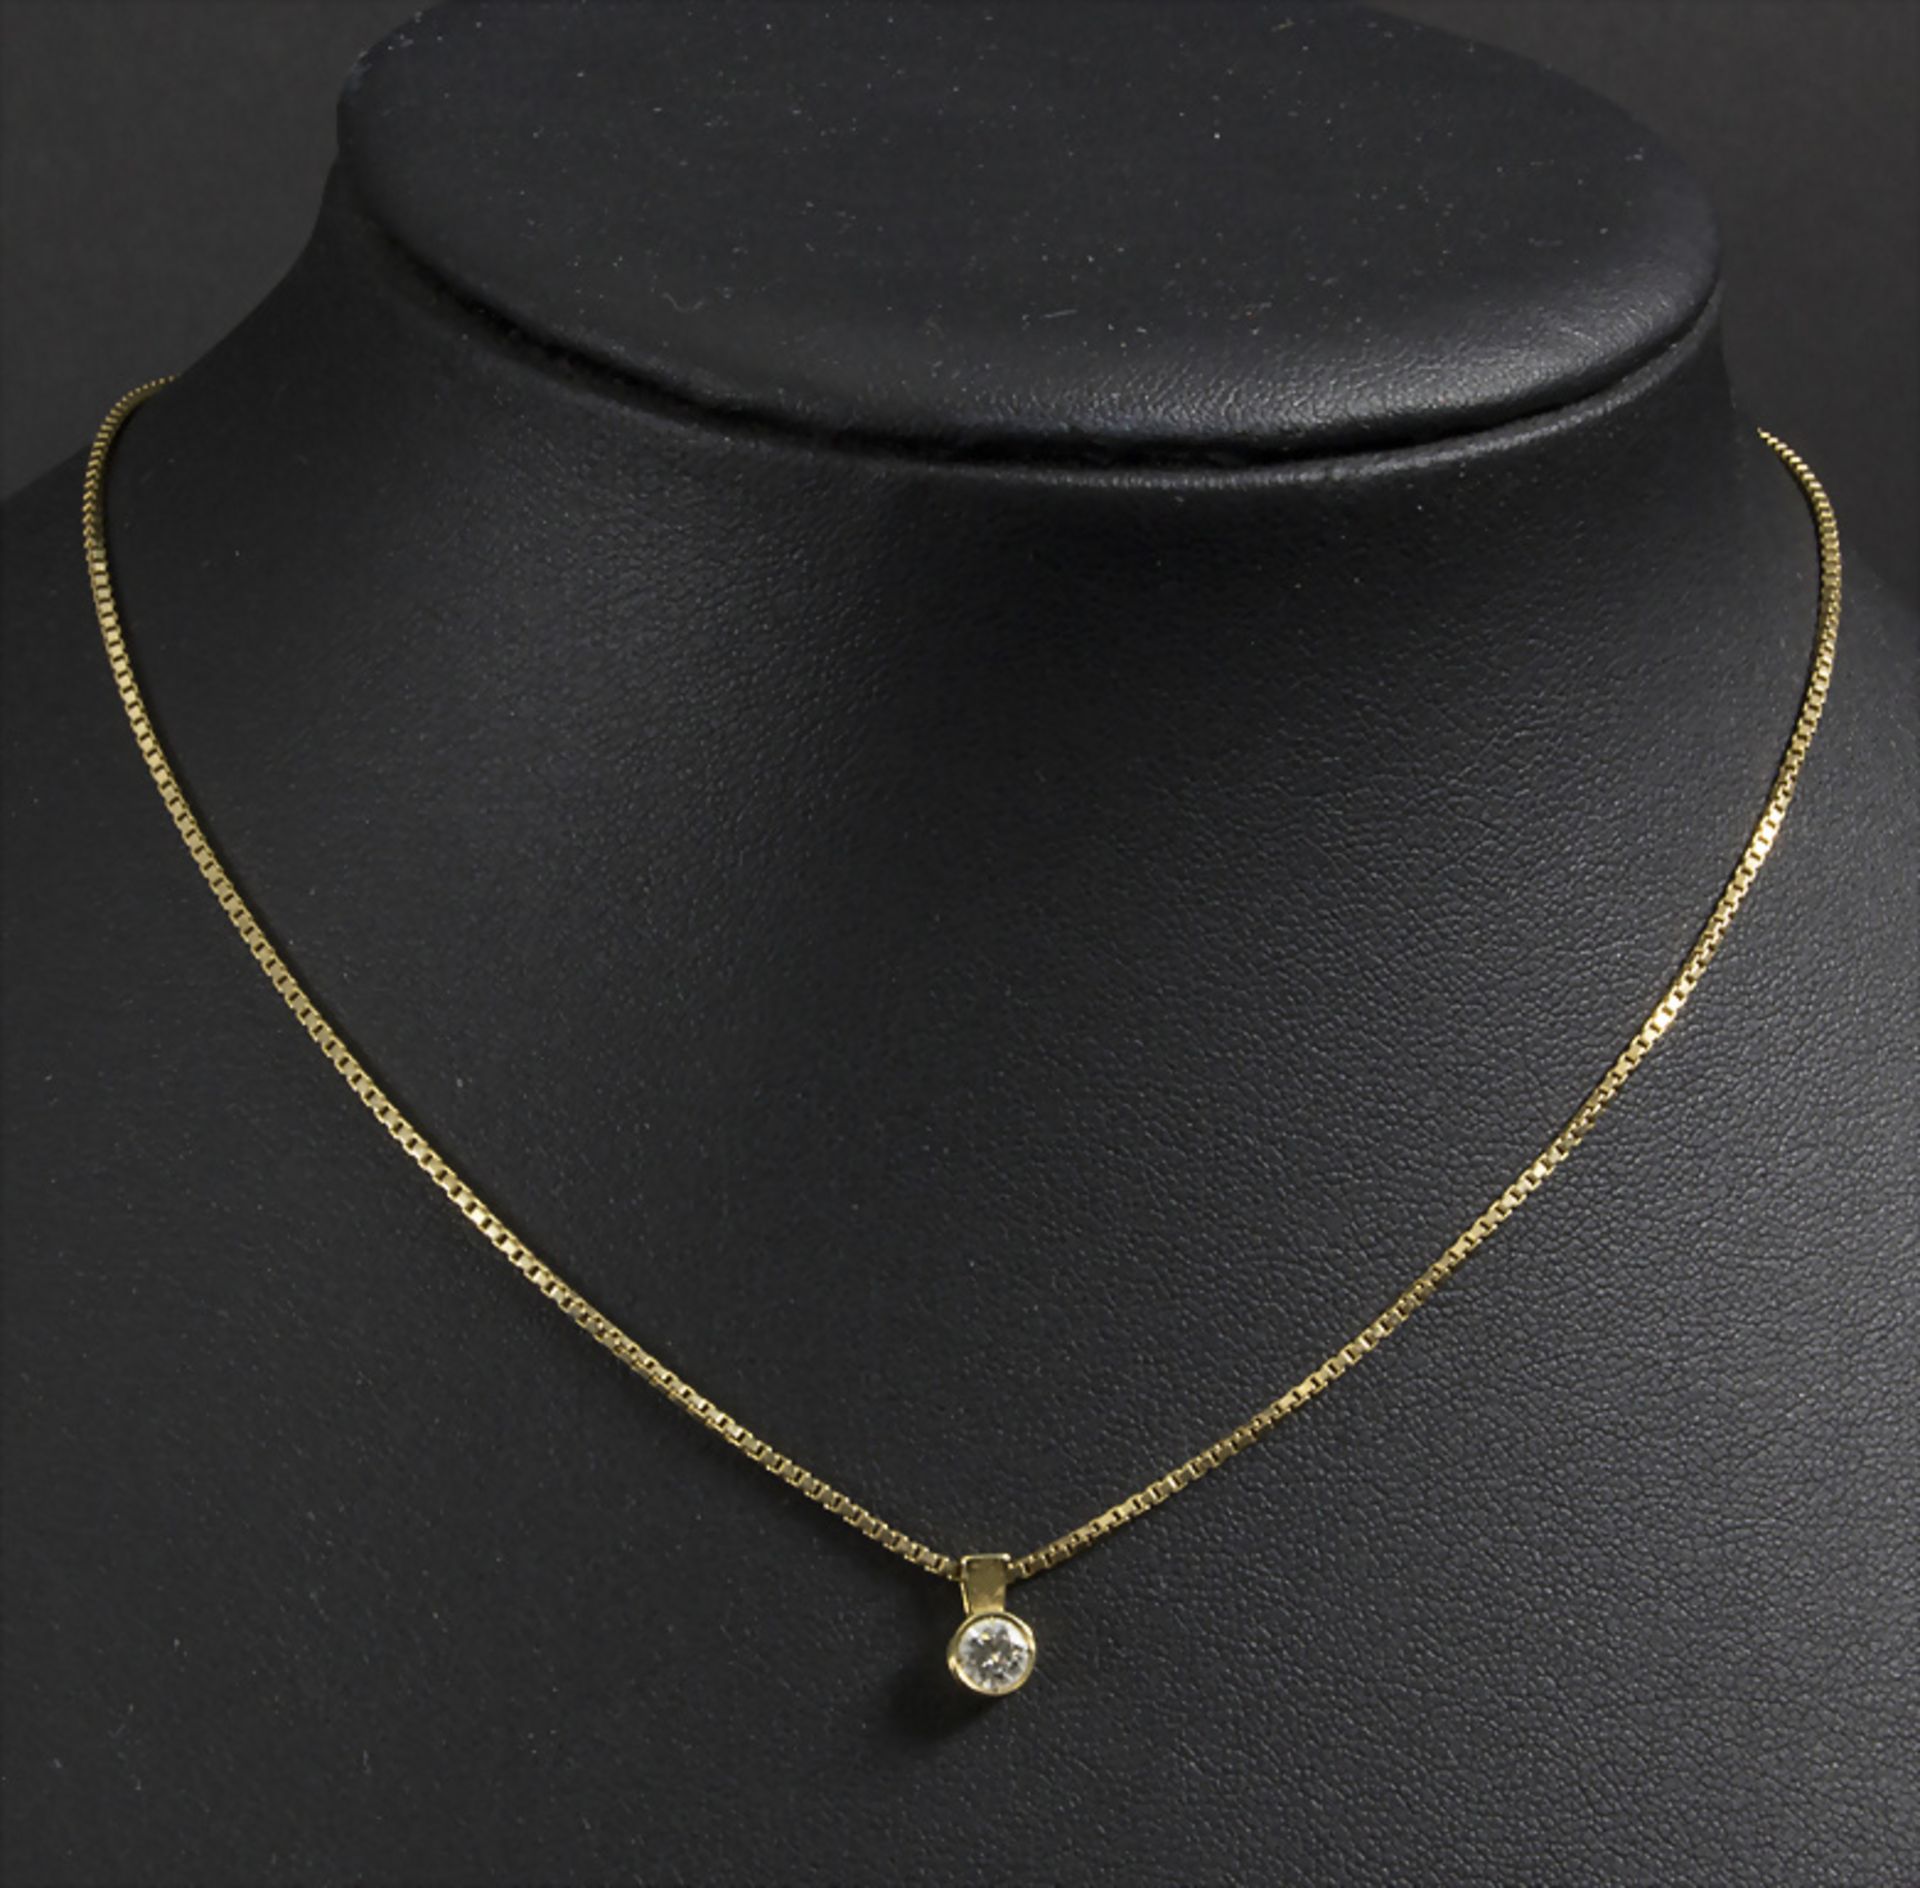 Damen Goldkette mit solitärem Diamanten / A 14 ct gold necklace with a diamond